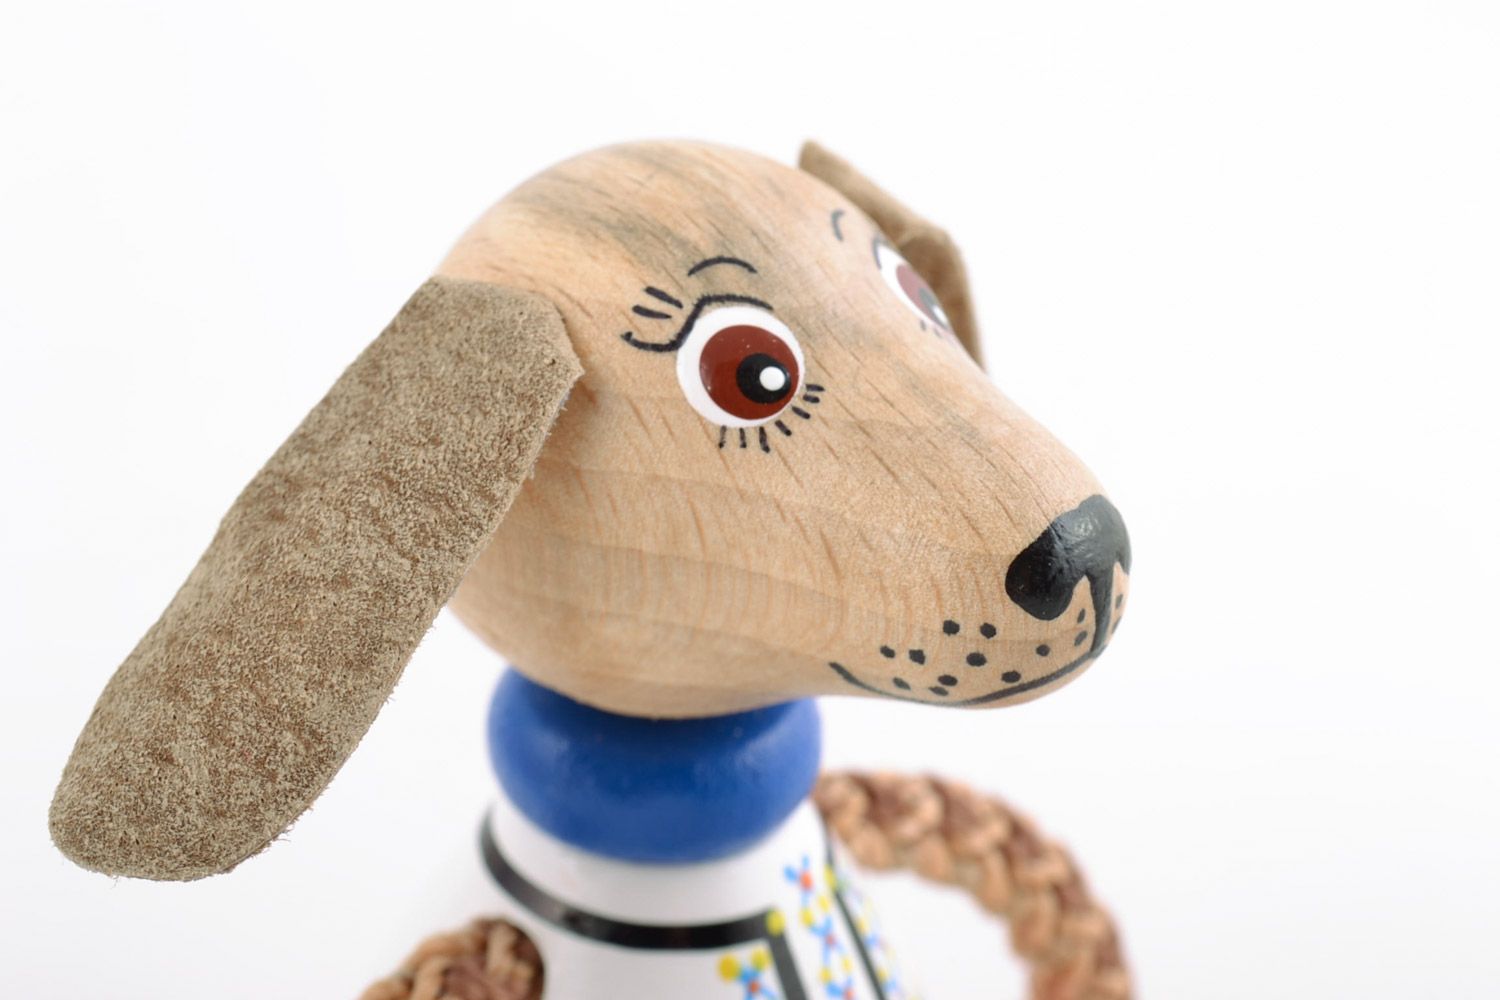 Jouet en bois écologique chien fait main de créateur peint pour enfant photo 3